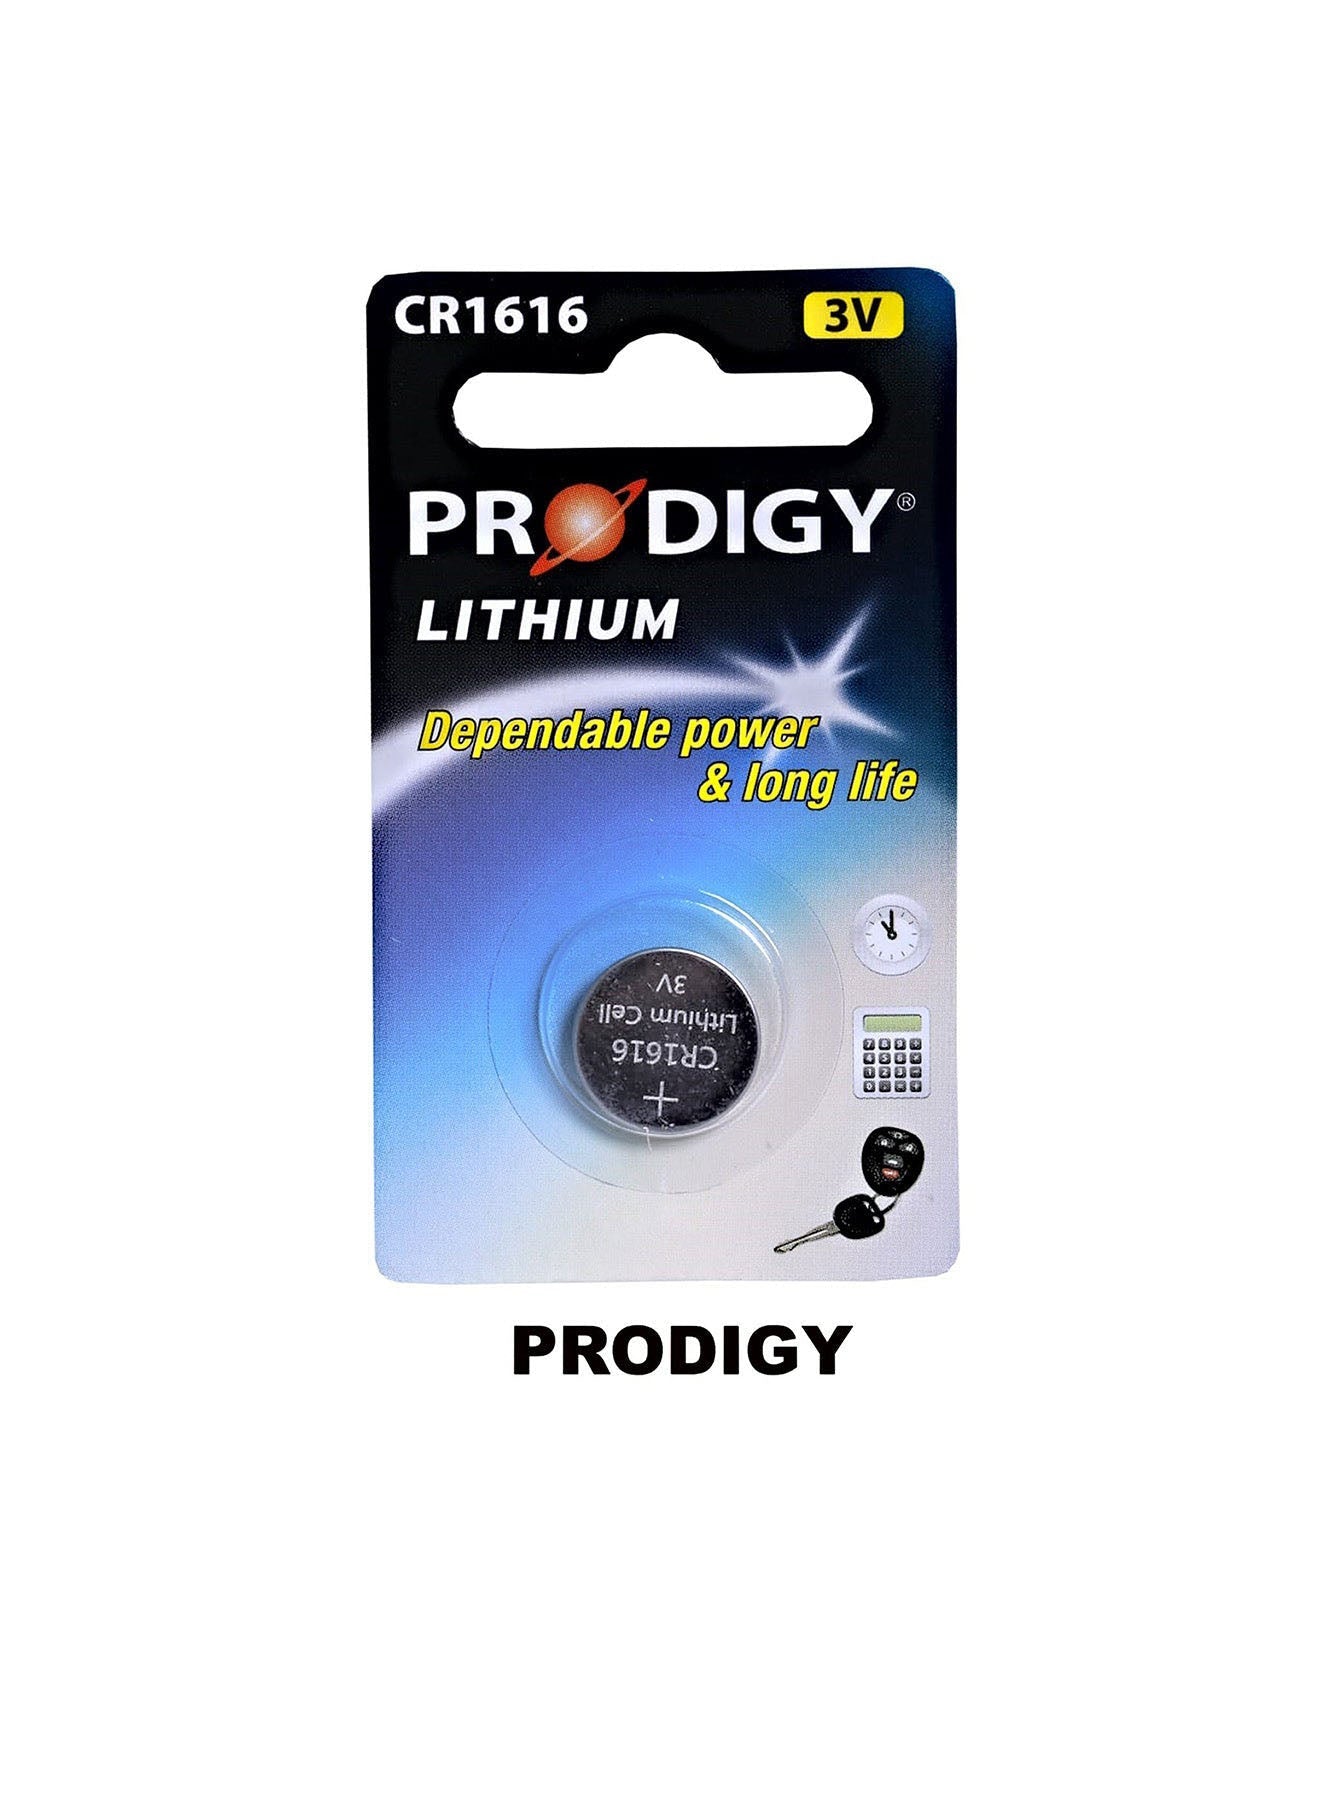 Prodigy Lithium CR1616 3V Value Pack of 2 